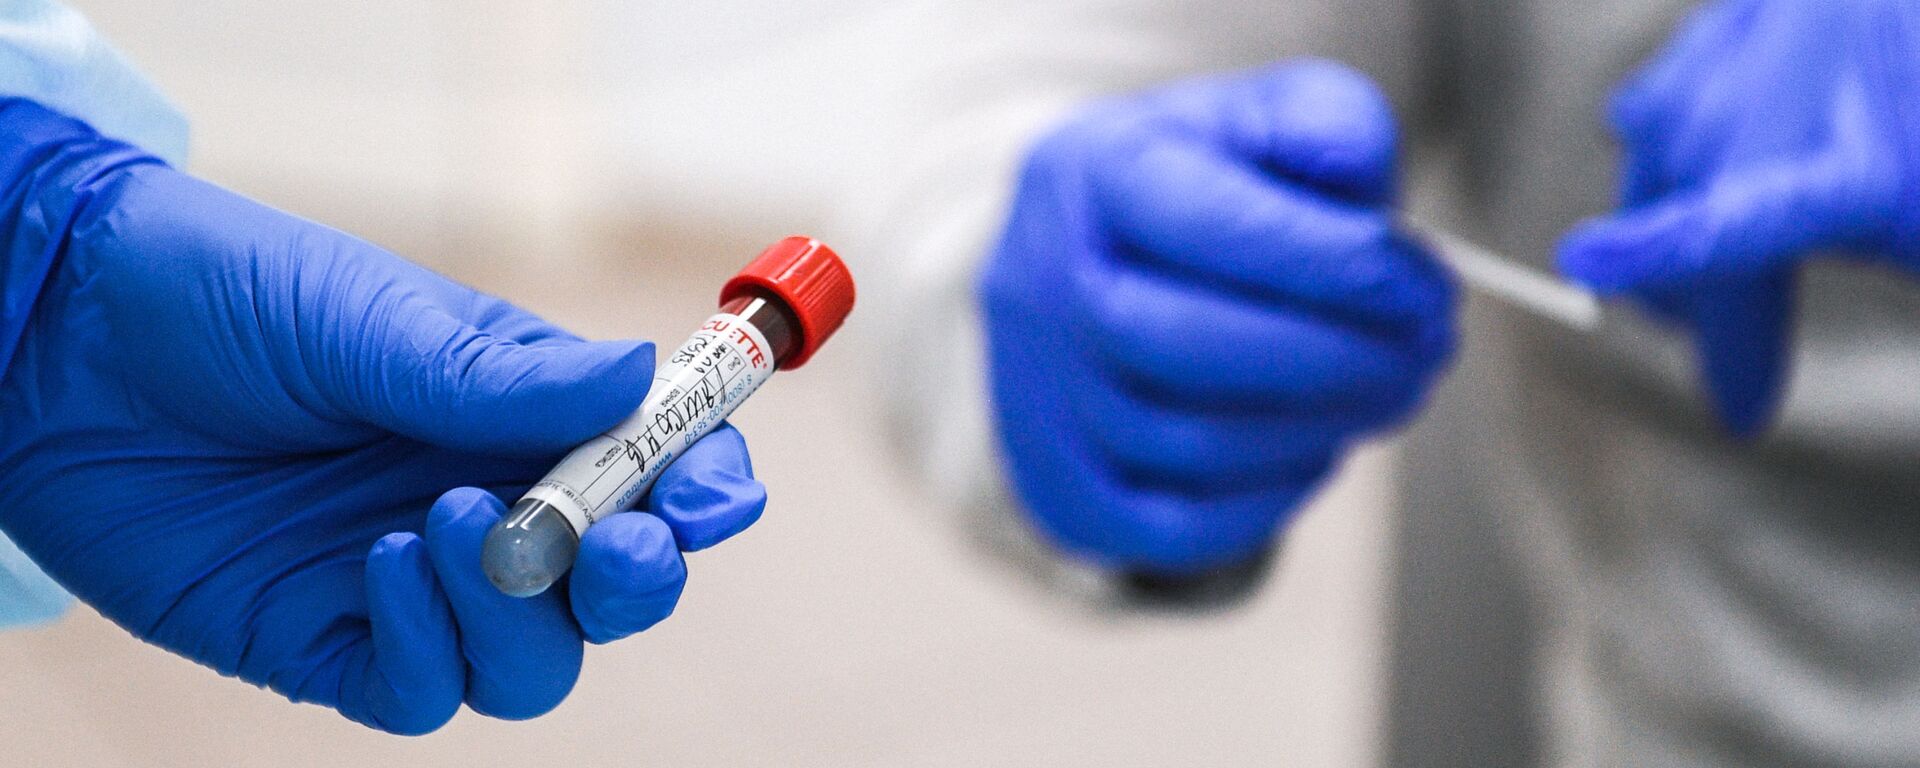 Пробирка с кровью пациента, сдавшего тест на наличие антител к вирусу SARS-CoV-2 - Sputnik Молдова, 1920, 29.12.2021